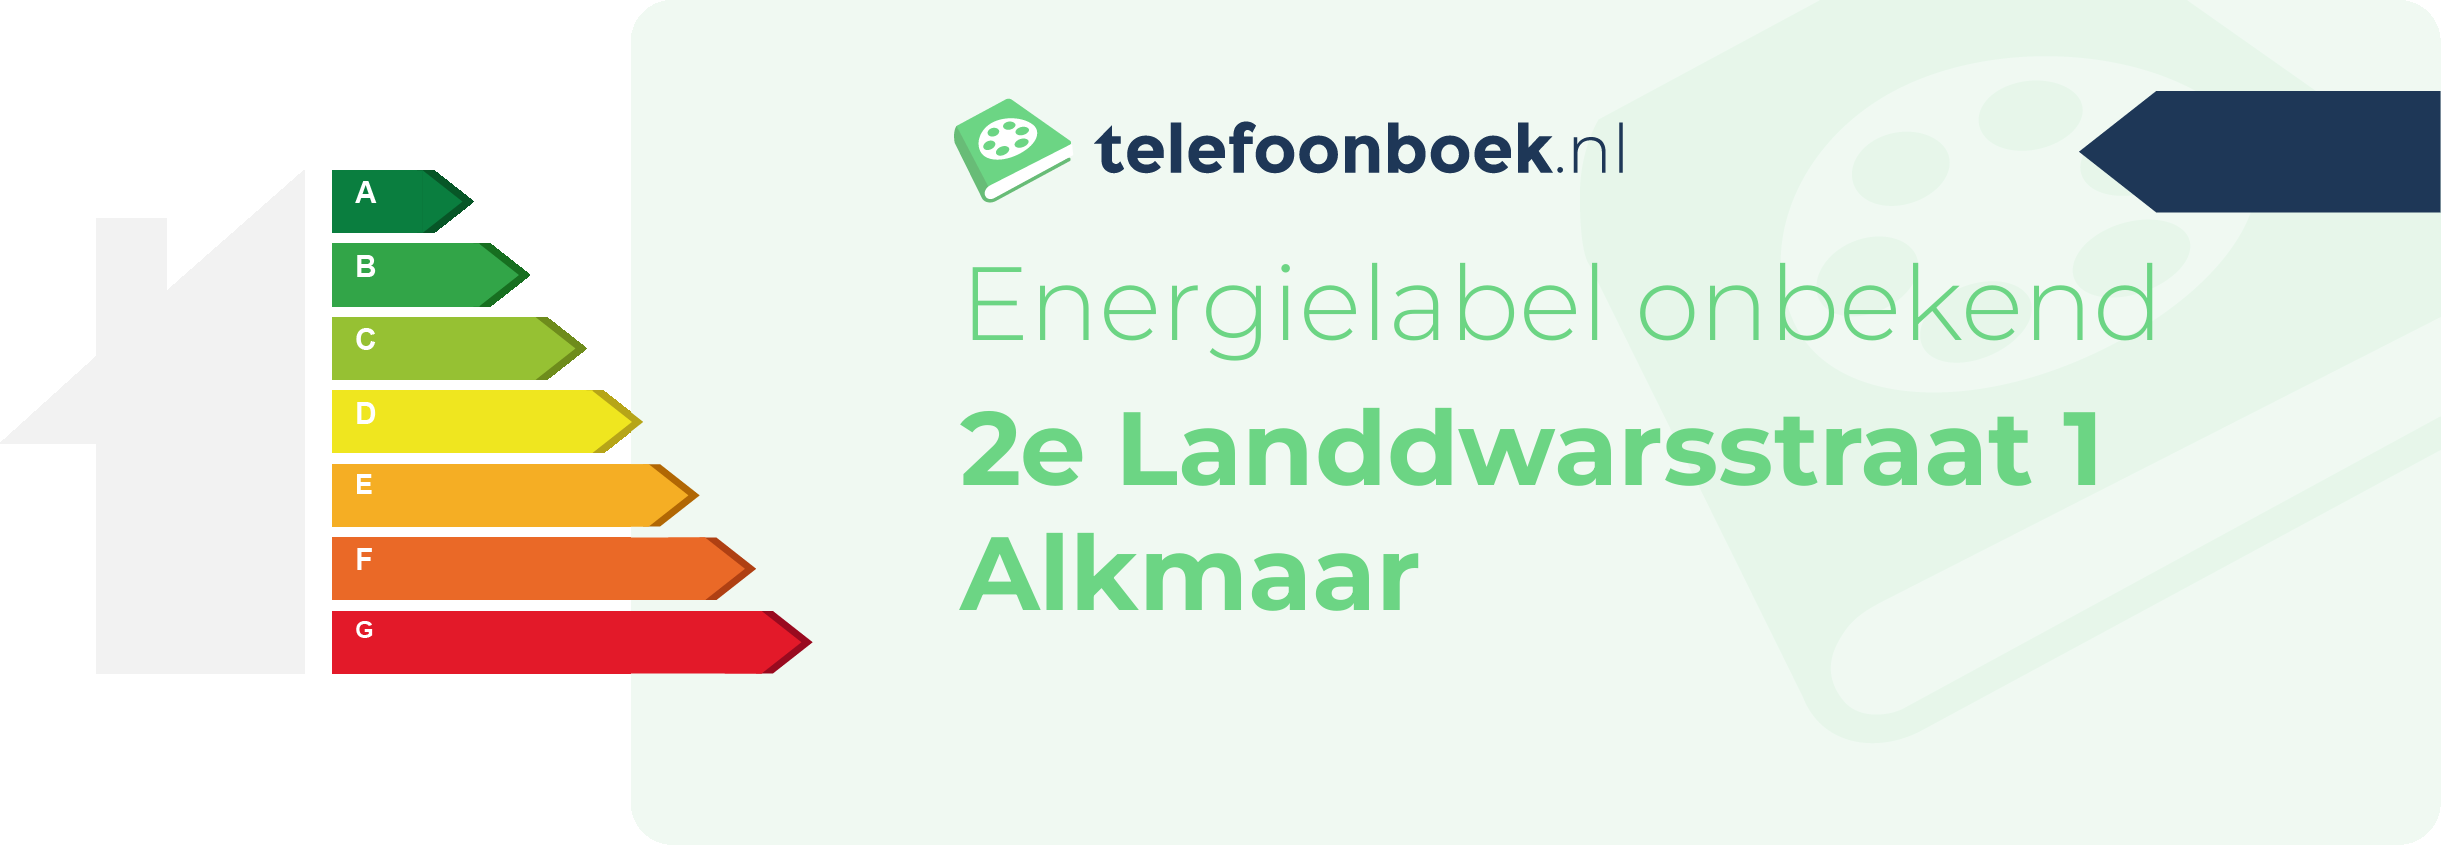 Energielabel 2e Landdwarsstraat 1 Alkmaar